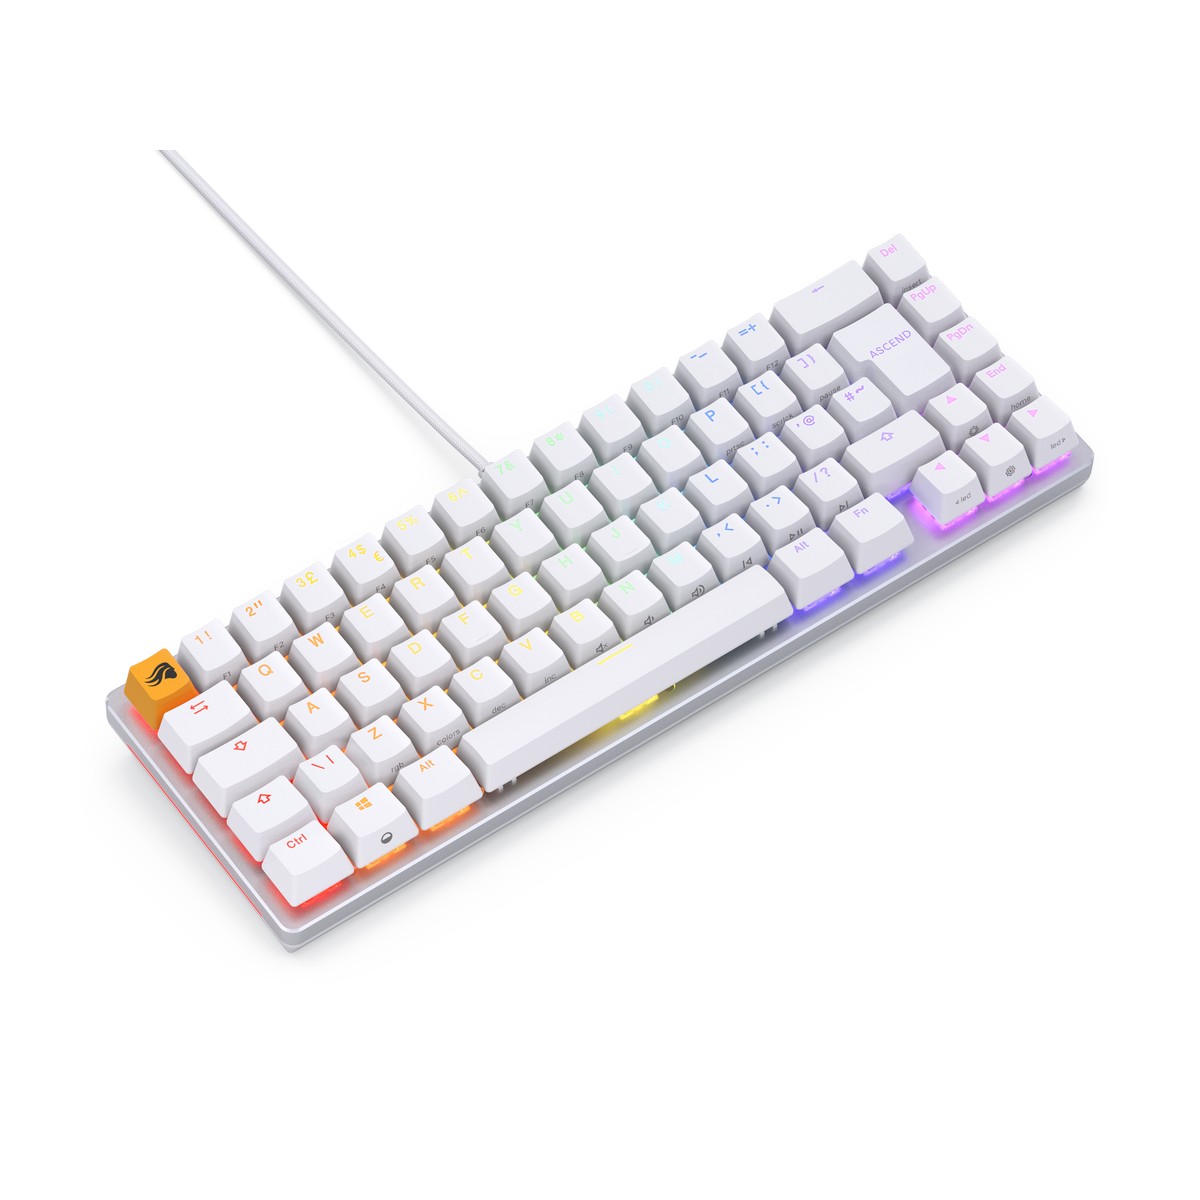 Glorious - Glorious GMMK 2 65% RGB USB Mechanical Gaming Keyboard UK ISO - White (GLO-GMMK2-65-FOX-ISO-W-UK)